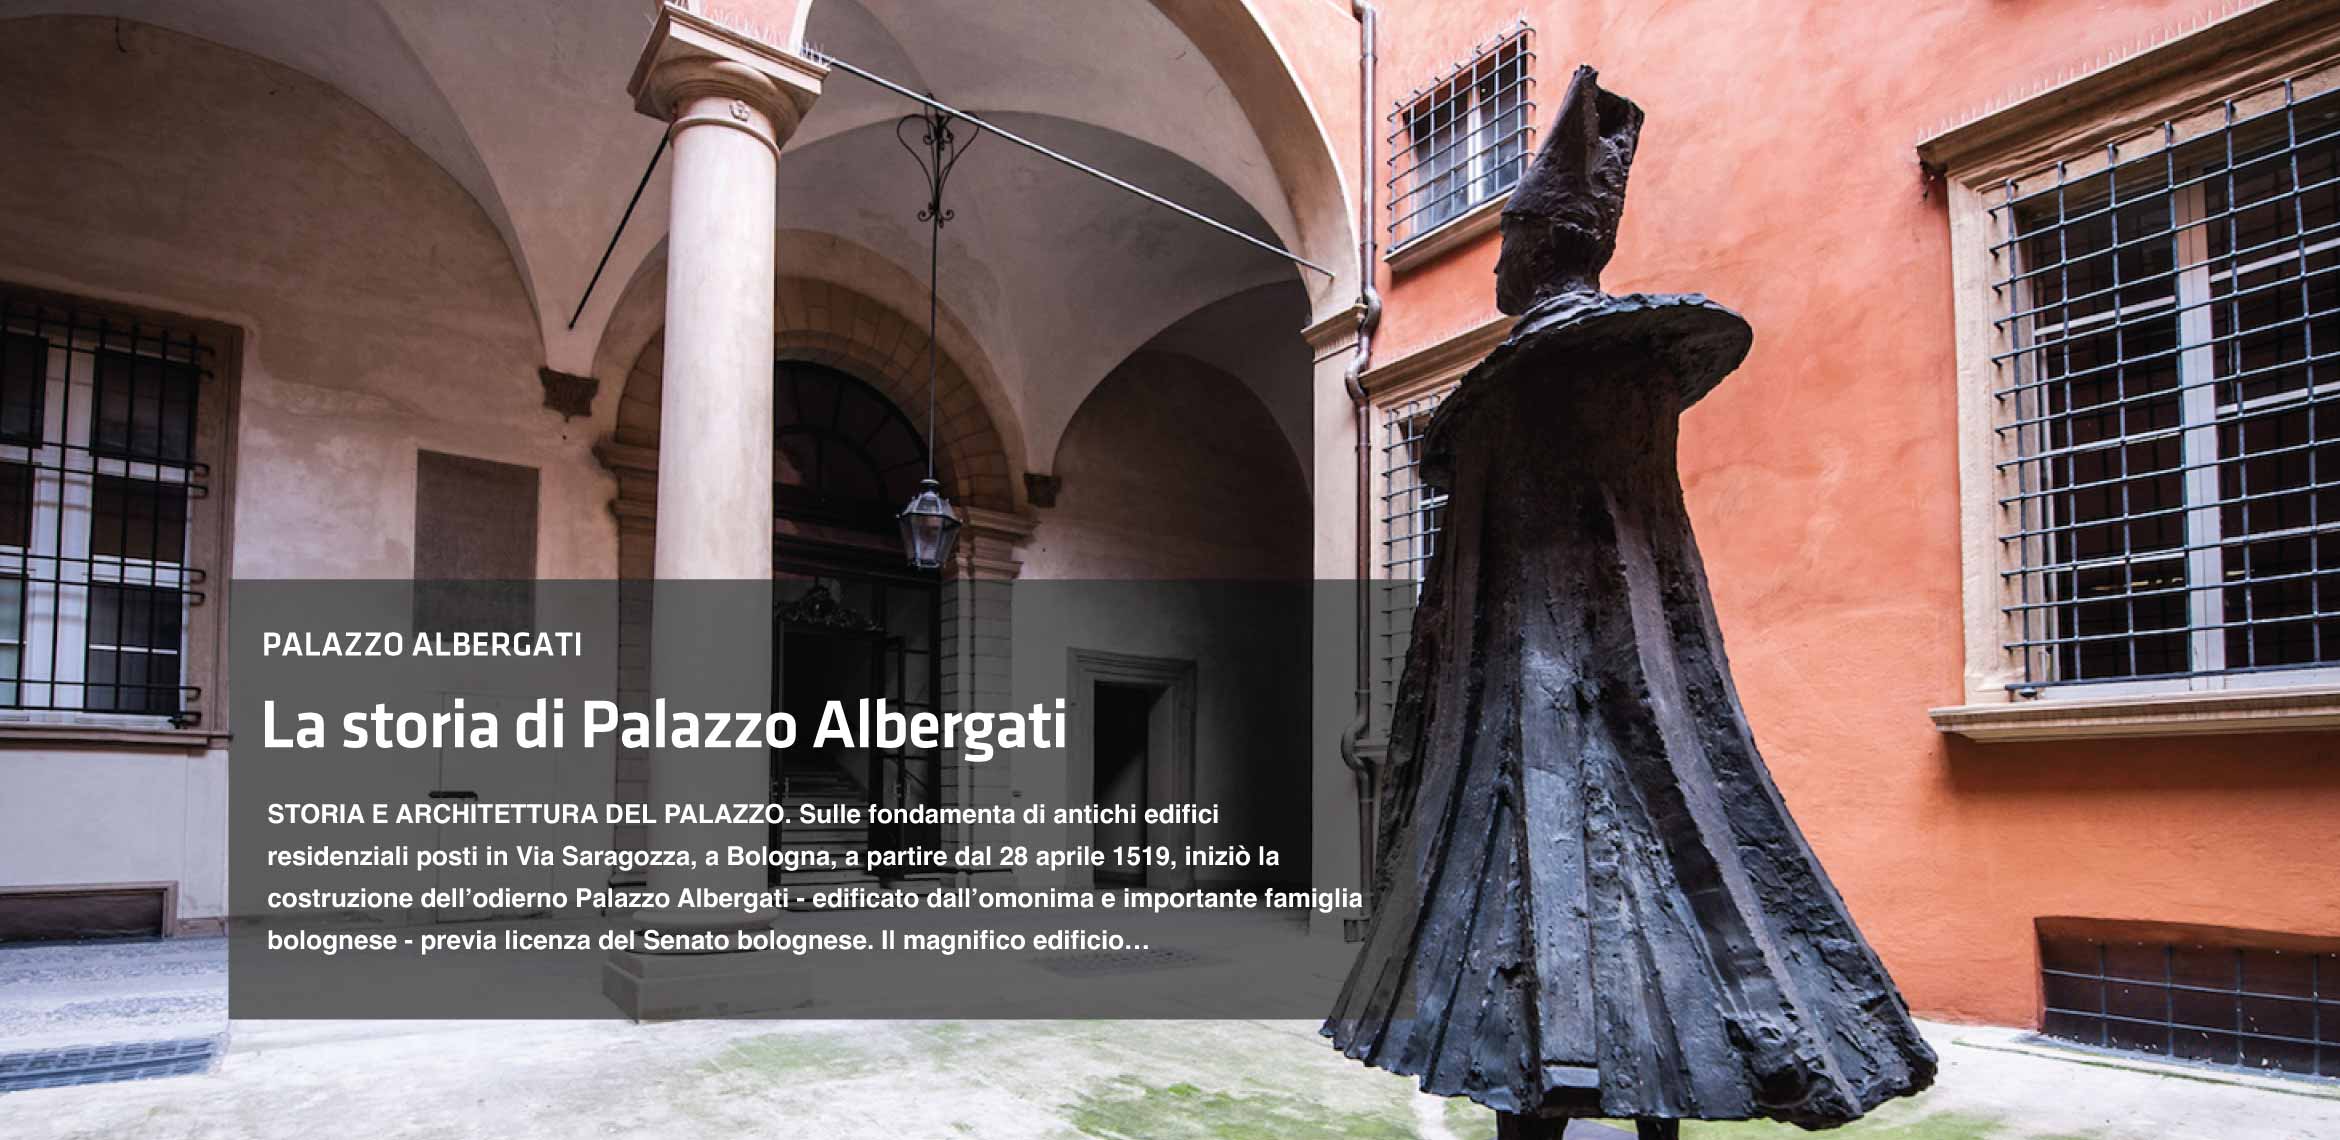 La storia di Palazzo Albergati